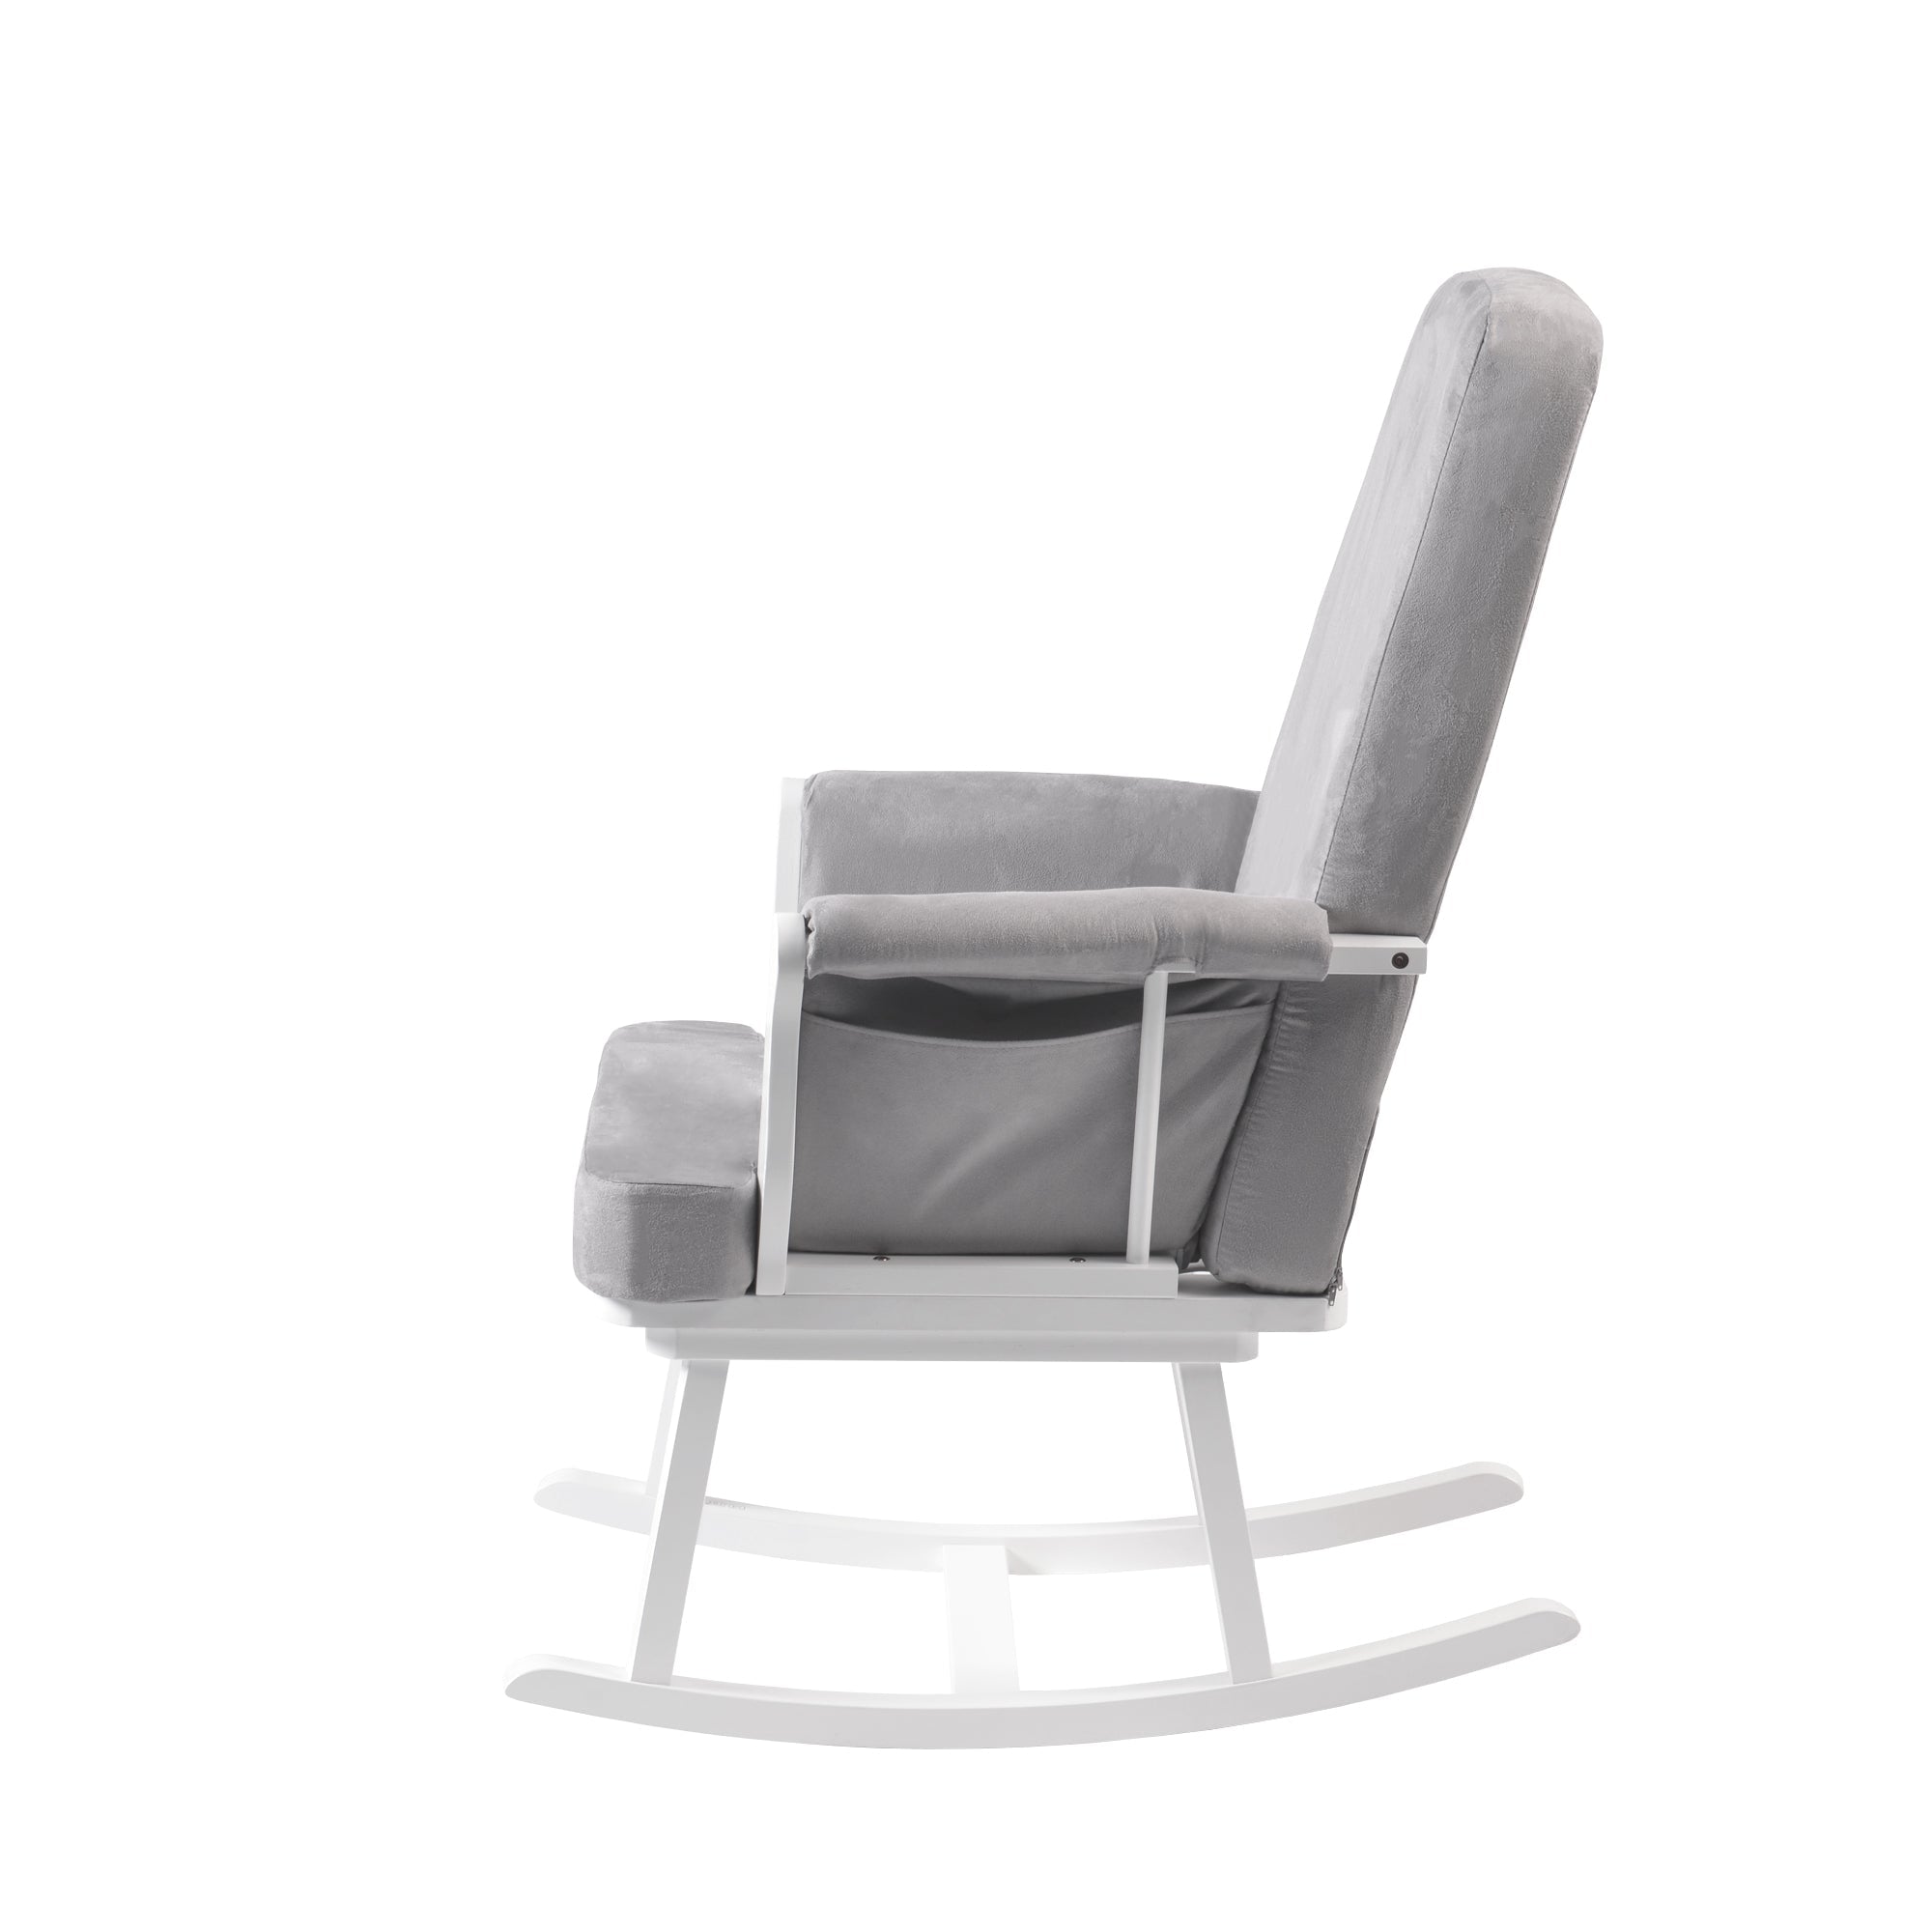 Haldon Nursing Rocking Chair White & Light Grey